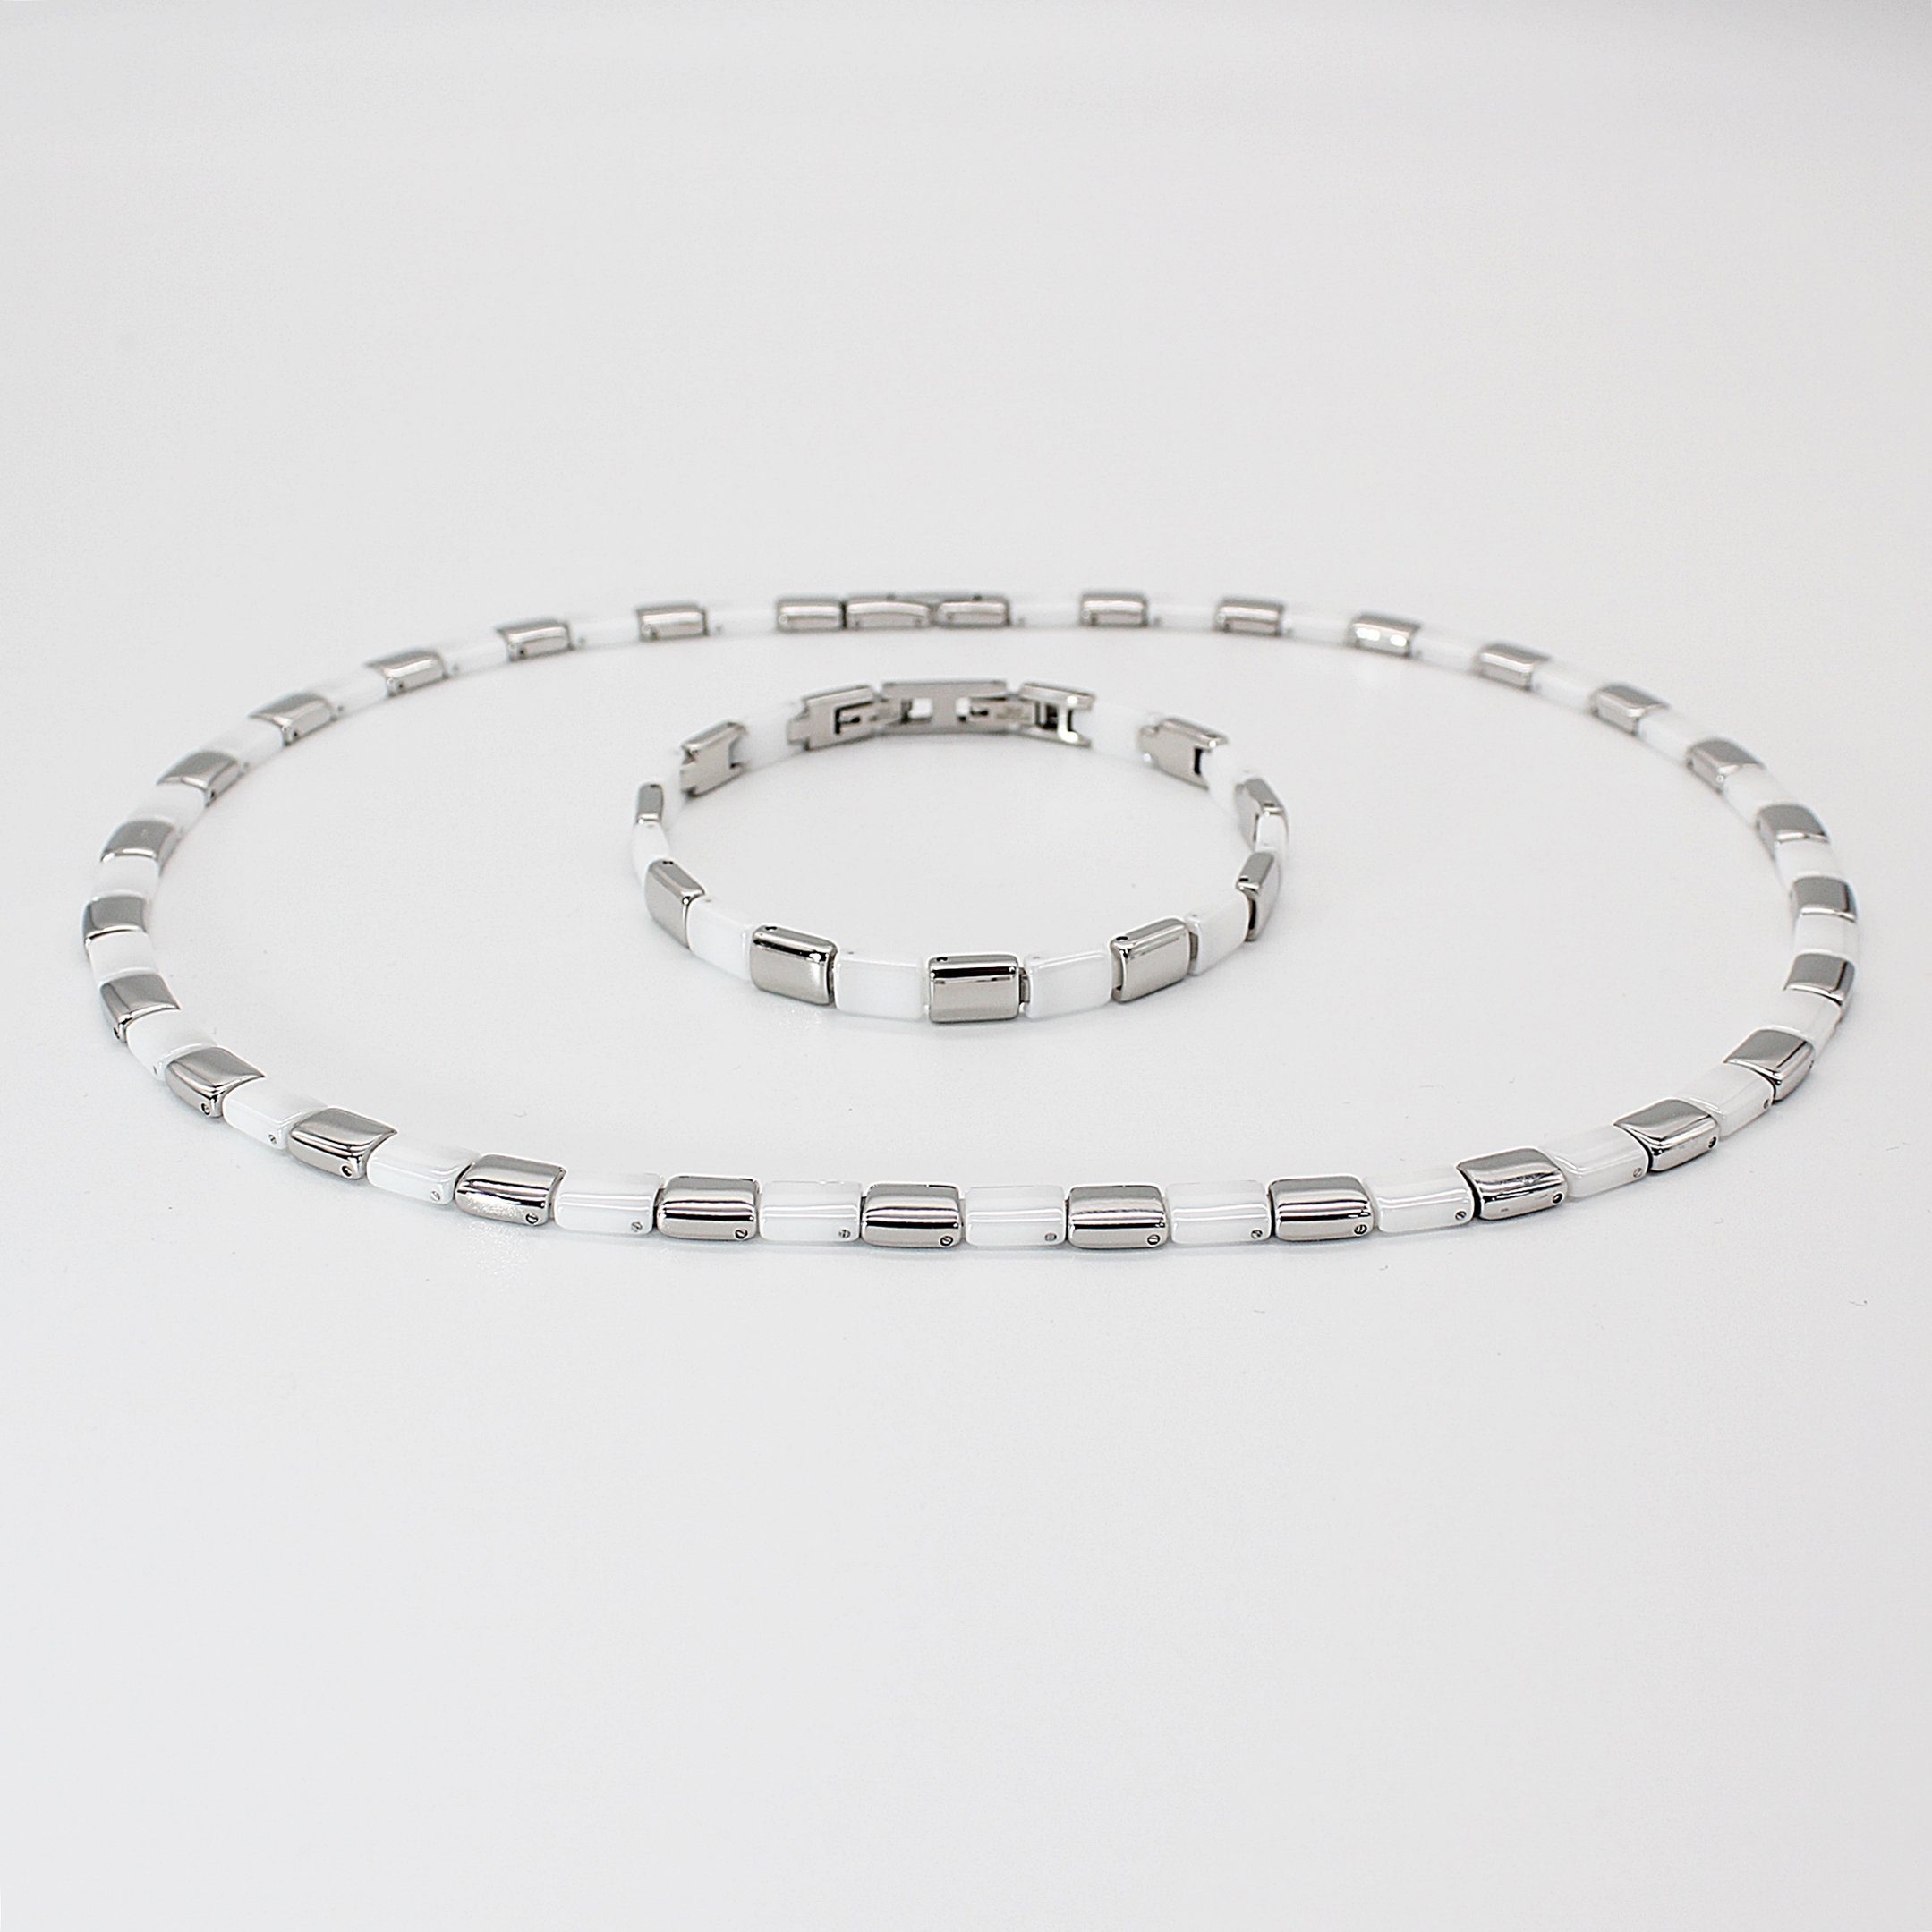 ELLAWIL Collier-Set Halskette Armband aus weißer Keramik mit silberfarbenem Edelstahl (Kettenlänge 48,5 cm, Armbandlänge 19 cm, Breite 6 mm), inklusive Geschenkschachtel